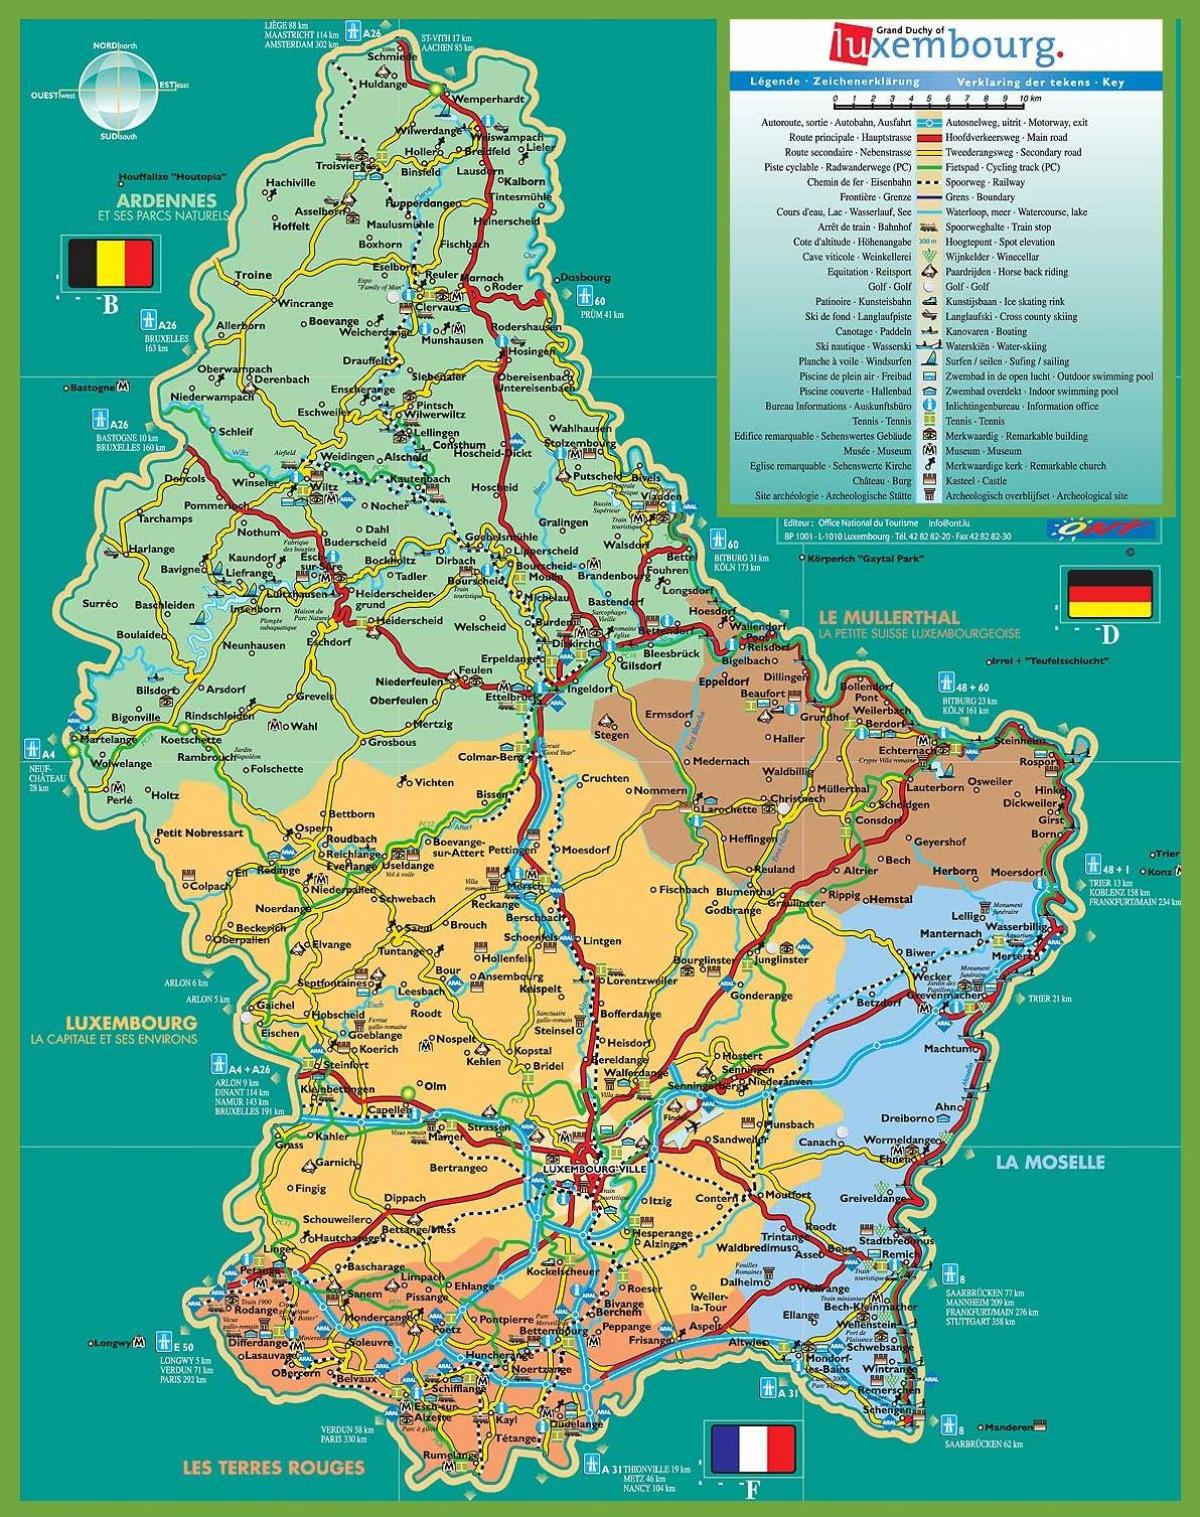 Люксембург газрууд газрын зураг